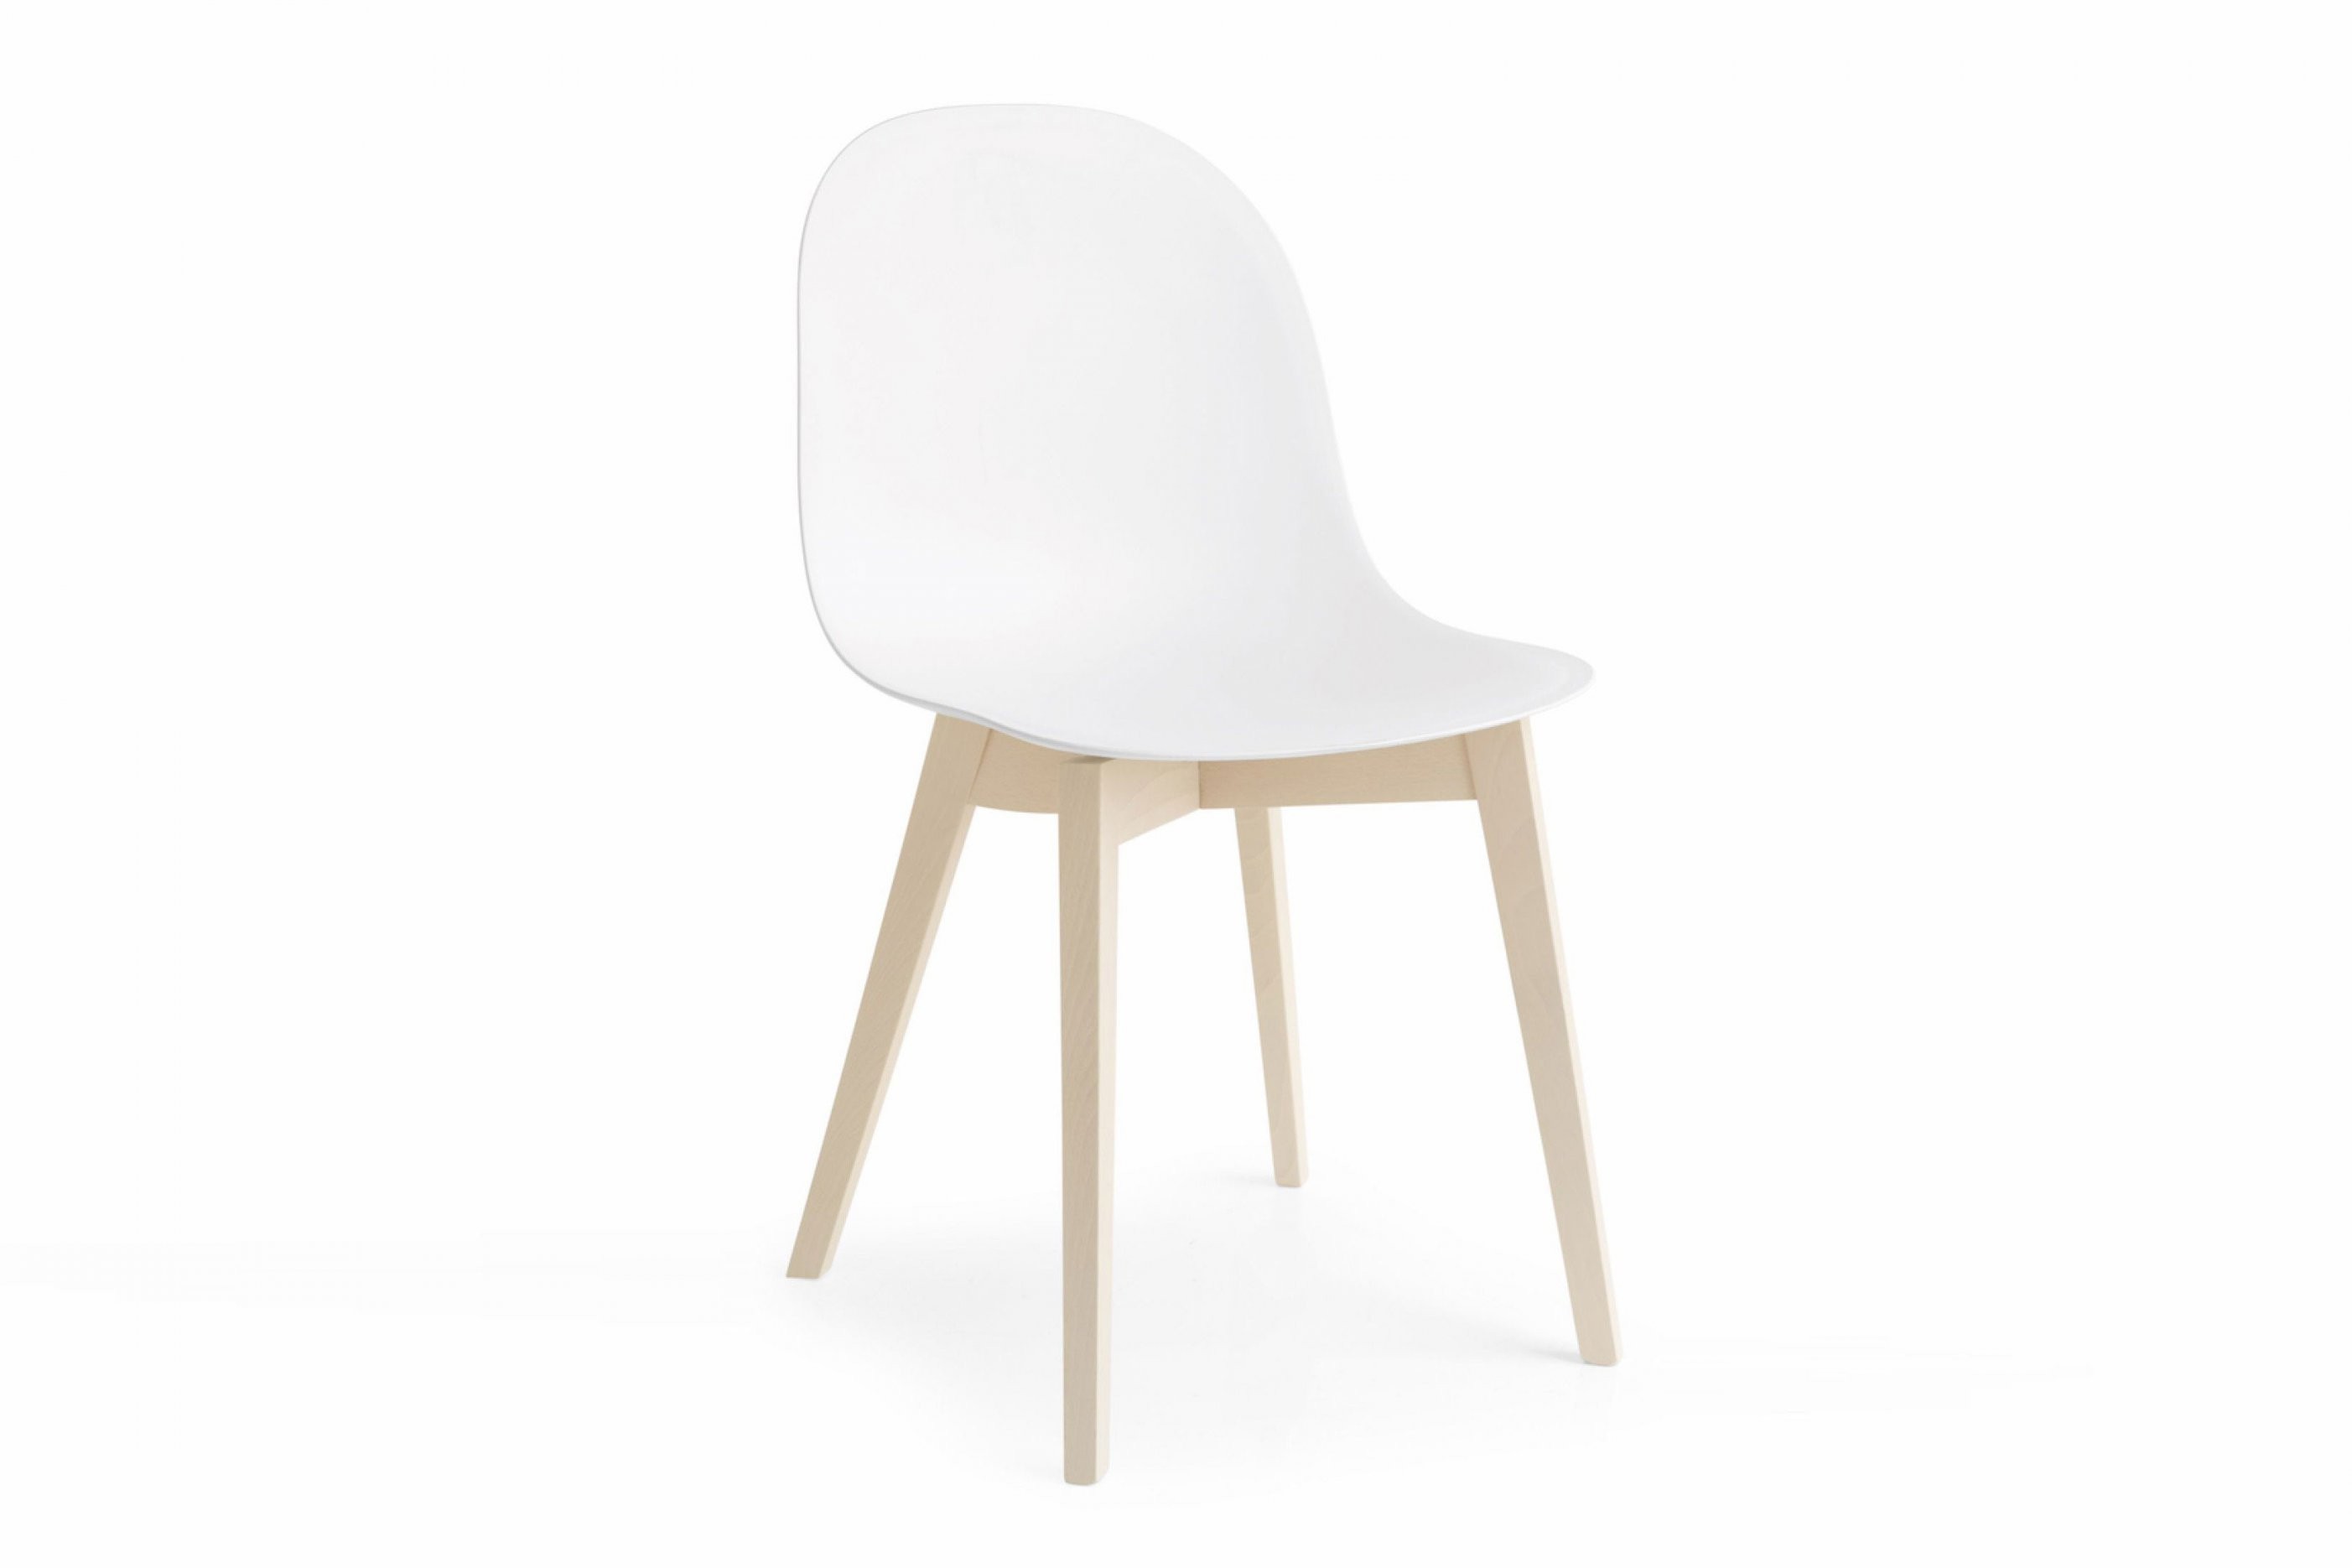 Skandinavische Stühle  Möbel Letz  Ihr Onlineshop von Skandinavische Stühle Günstig Bild